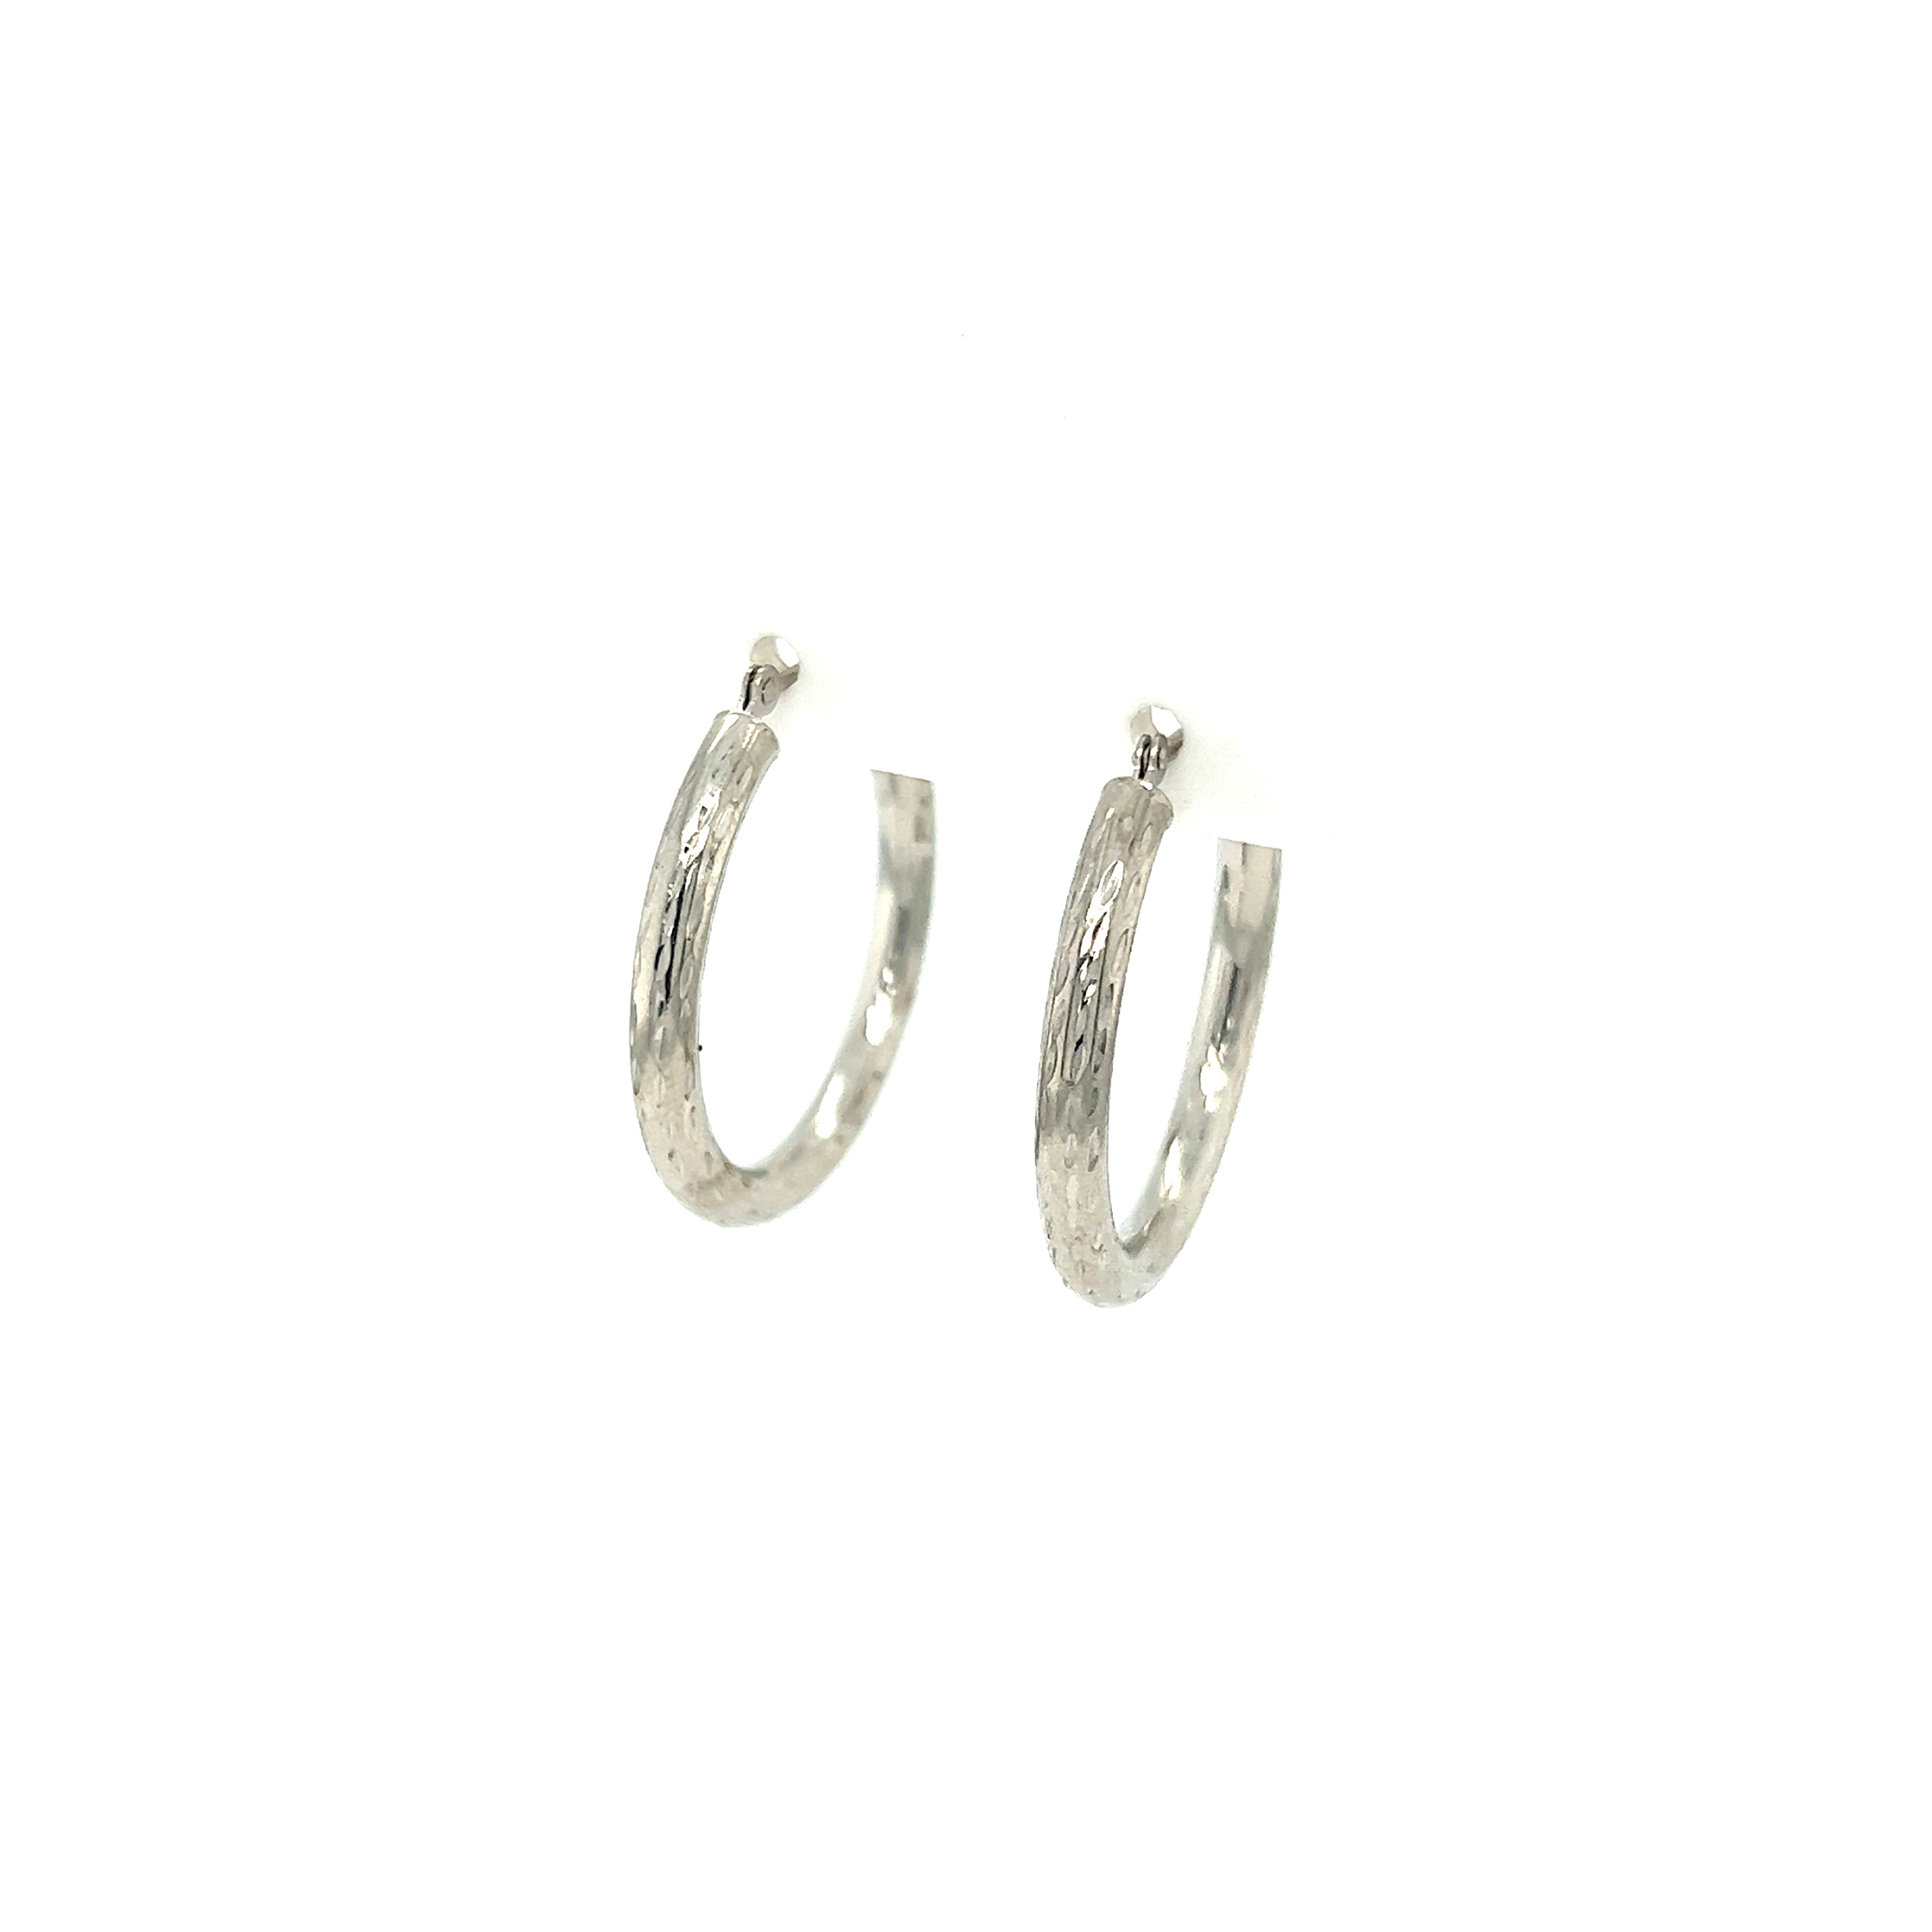 14K white gold hoop earrings